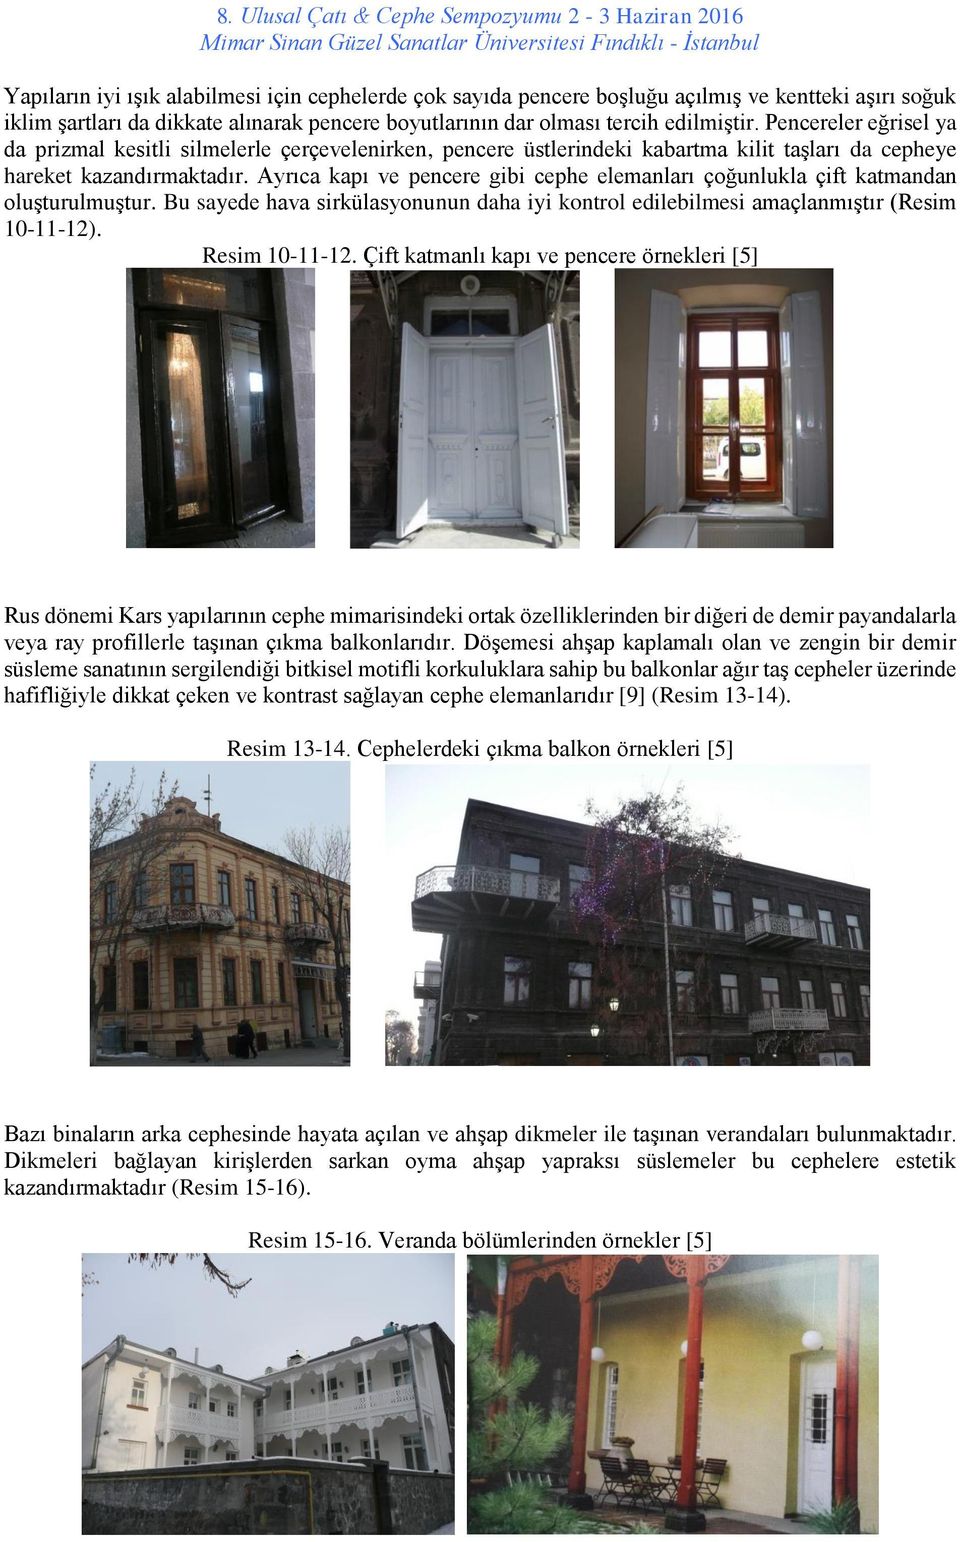 Ayrıca kapı ve pencere gibi cephe elemanları çoğunlukla çift katmandan oluşturulmuştur. Bu sayede hava sirkülasyonunun daha iyi kontrol edilebilmesi amaçlanmıştır (Resim 10-11-12). Resim 10-11-12.